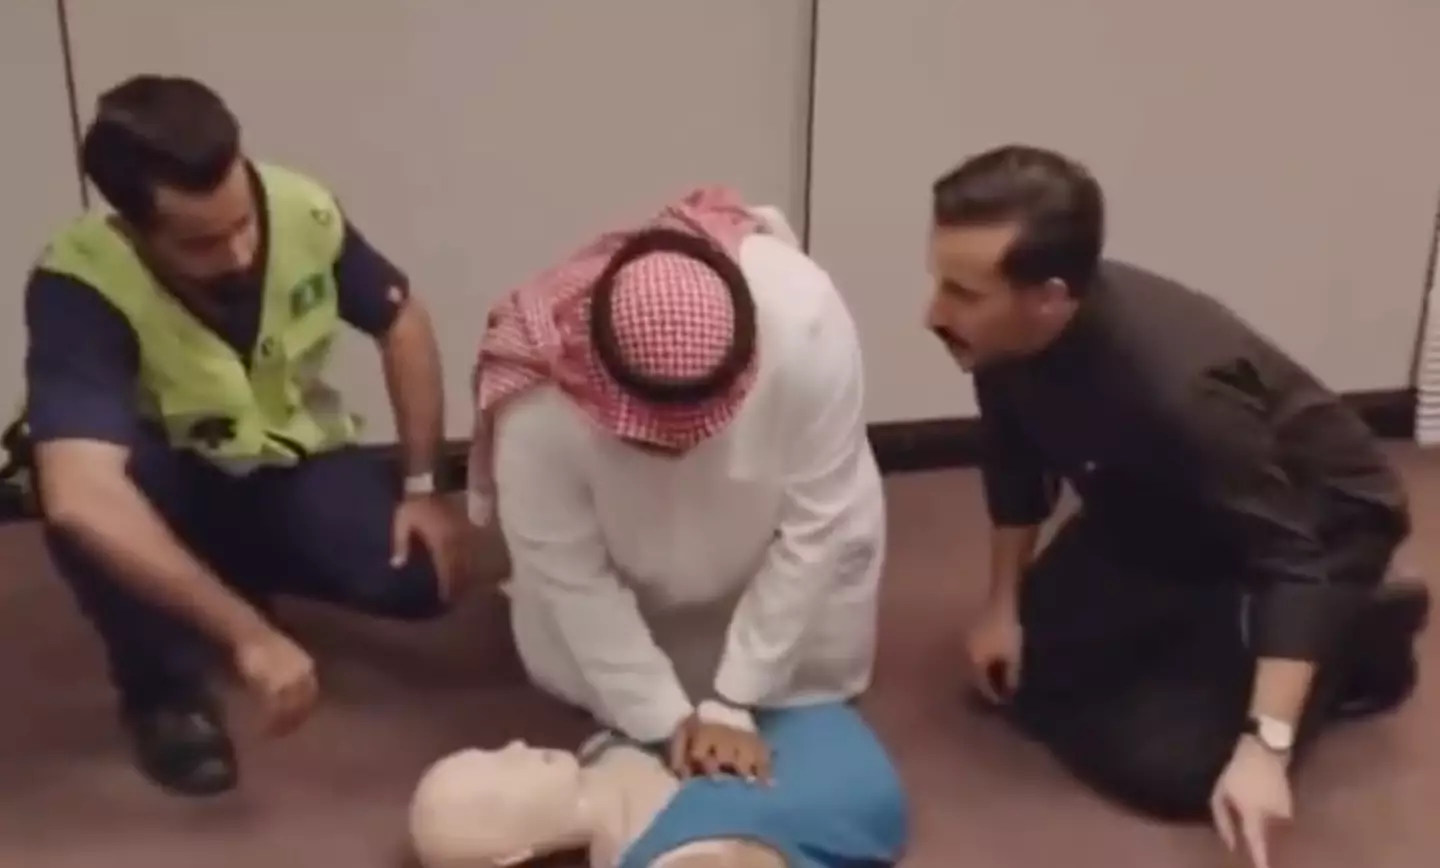 Al Maktab recreates the iconic CPR and fire drill scenes.